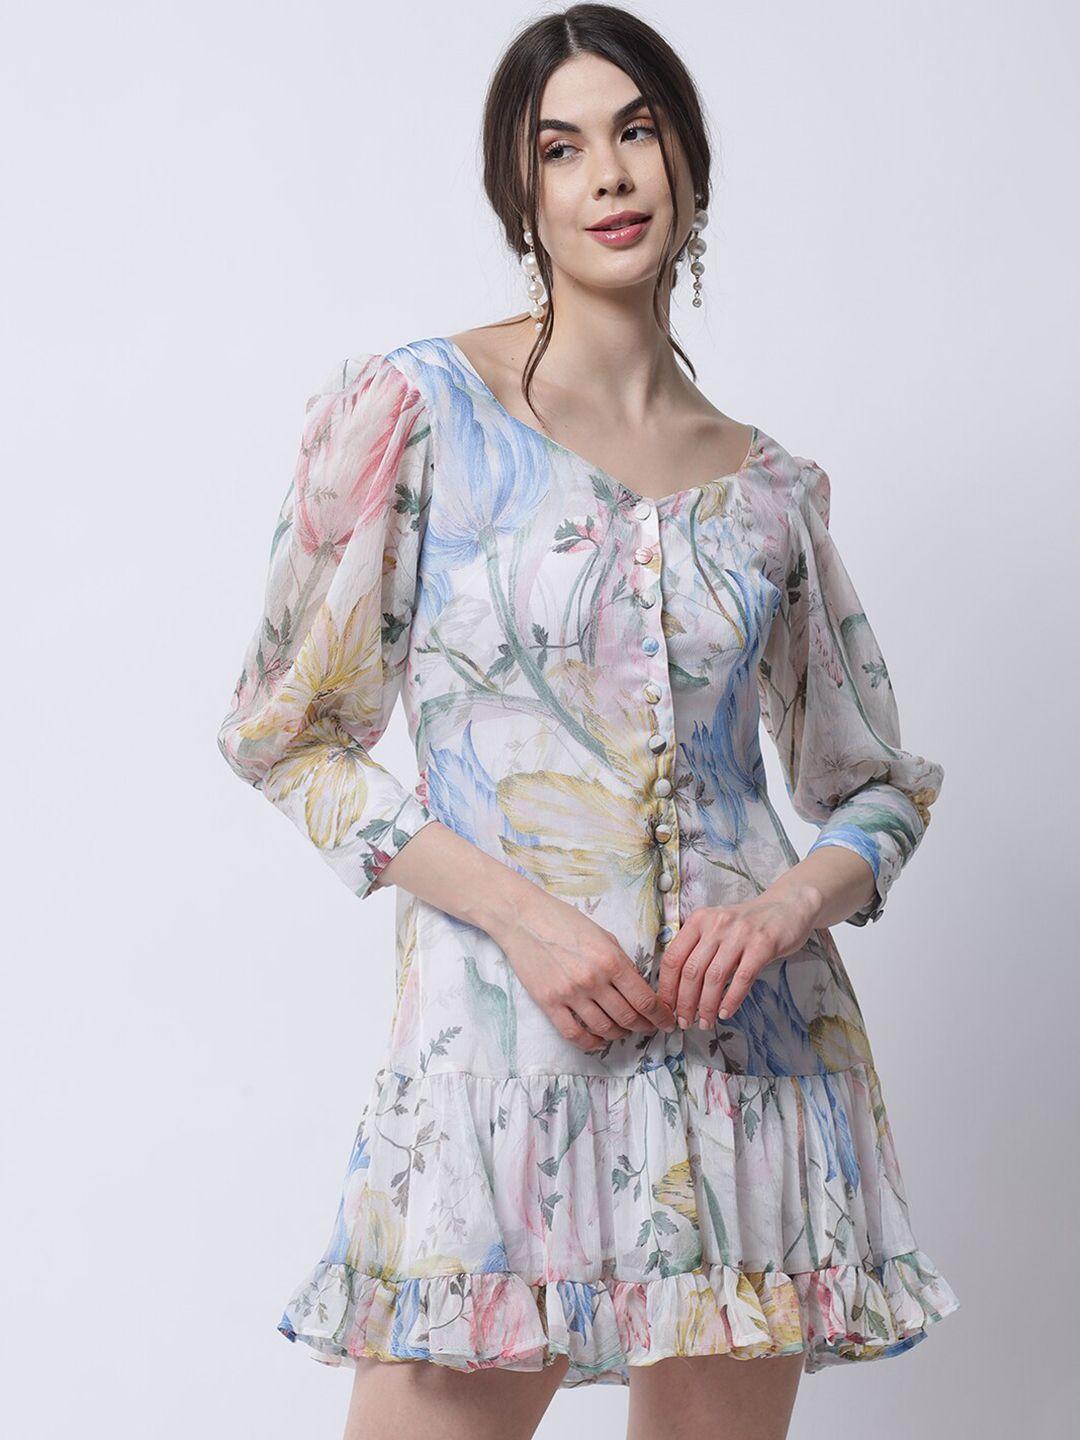 marc louis white & blue floral chiffon dress